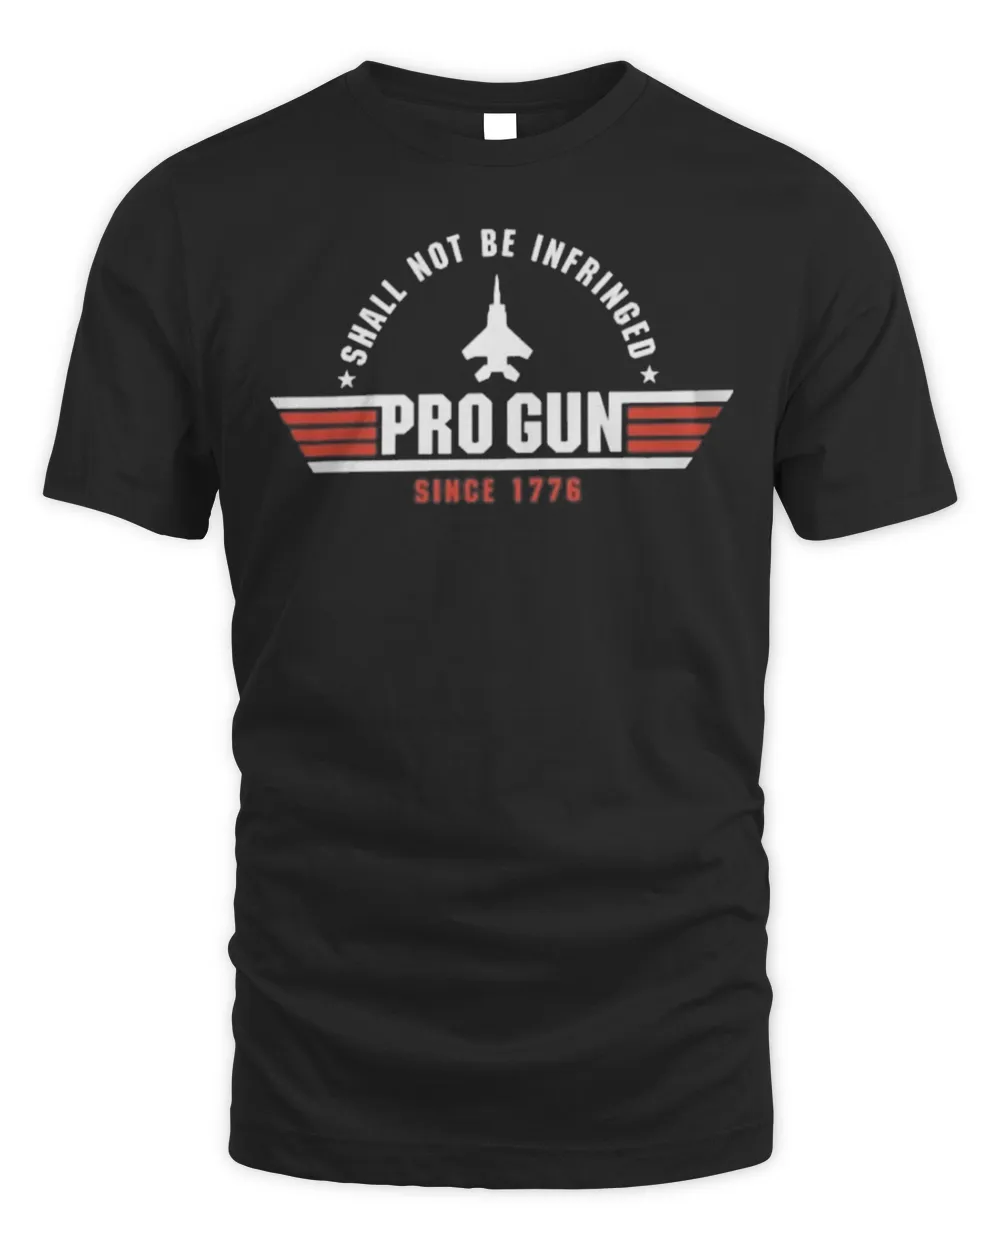 Shall Not Be Infringed Pro Gun Since 1776 Shirt